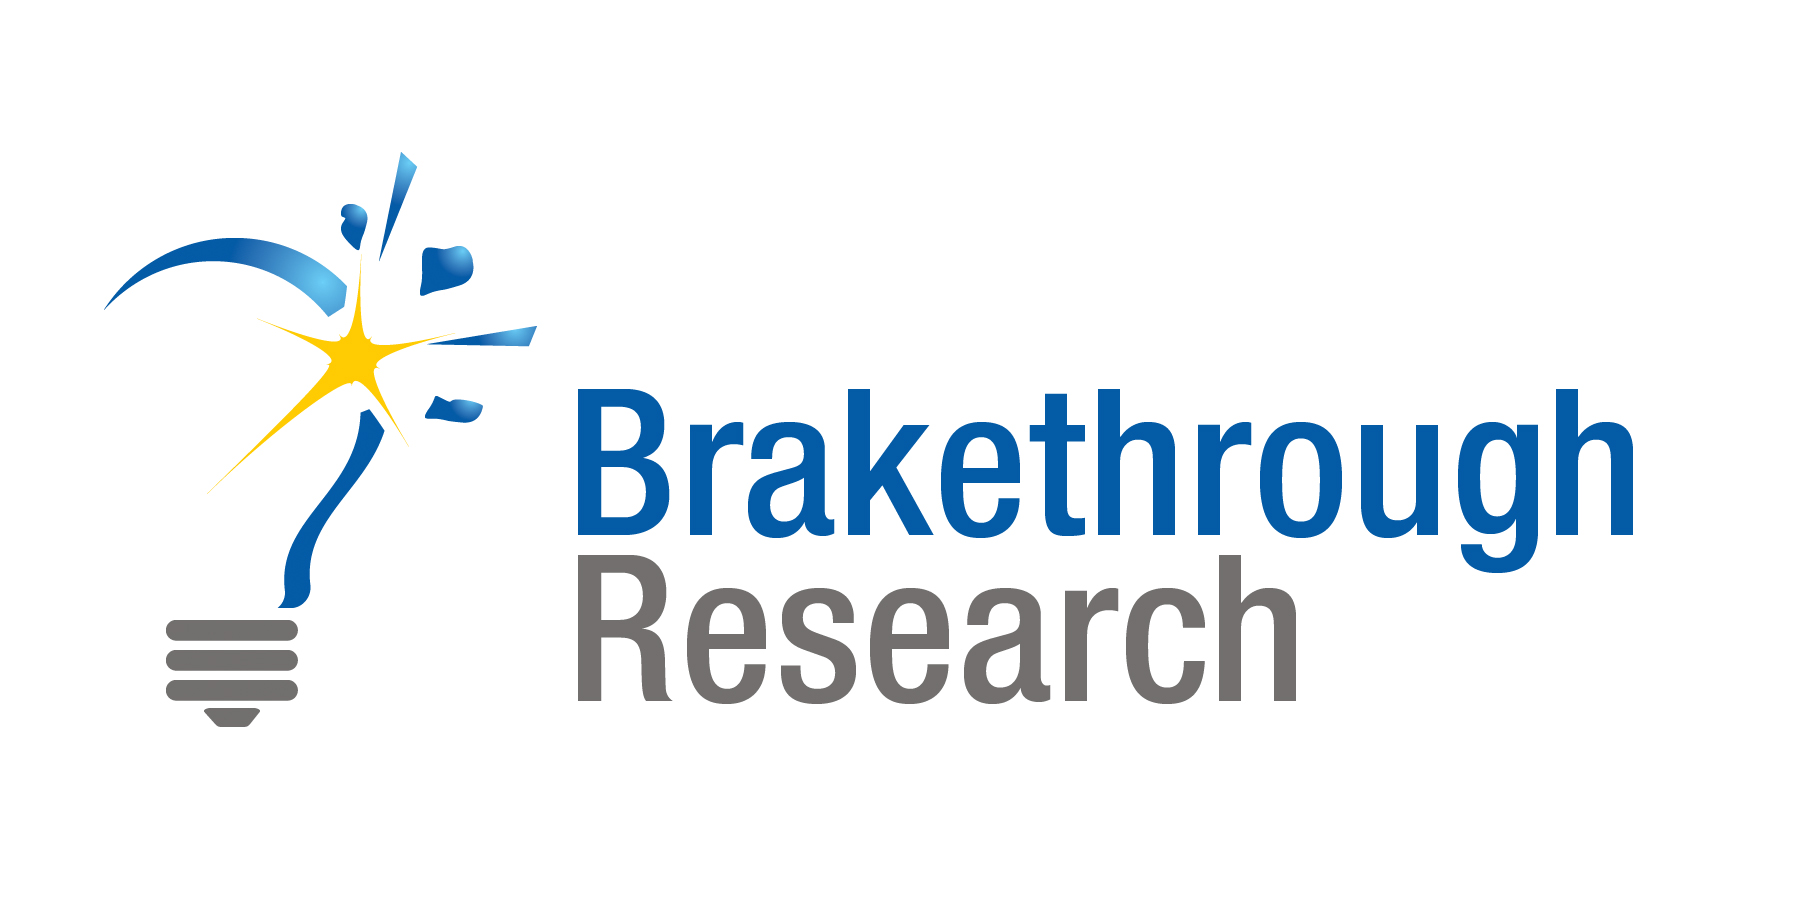 Brakethrough Research